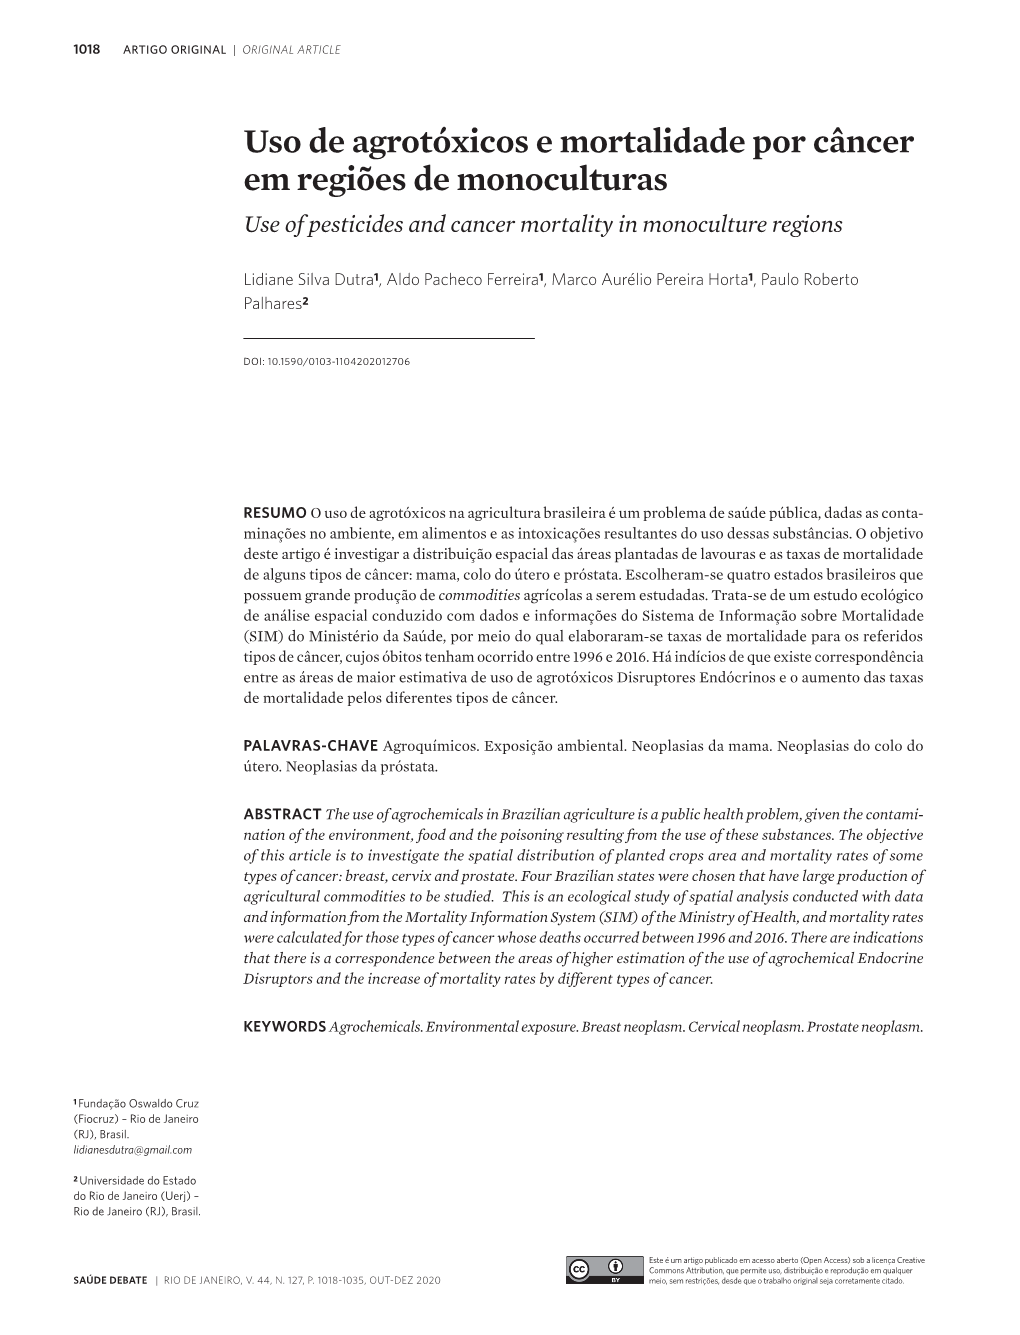 Uso De Agrotóxicos E Mortalidade Por Câncer Em Regiões De Monoculturas Use of Pesticides and Cancer Mortality in Monoculture Regions